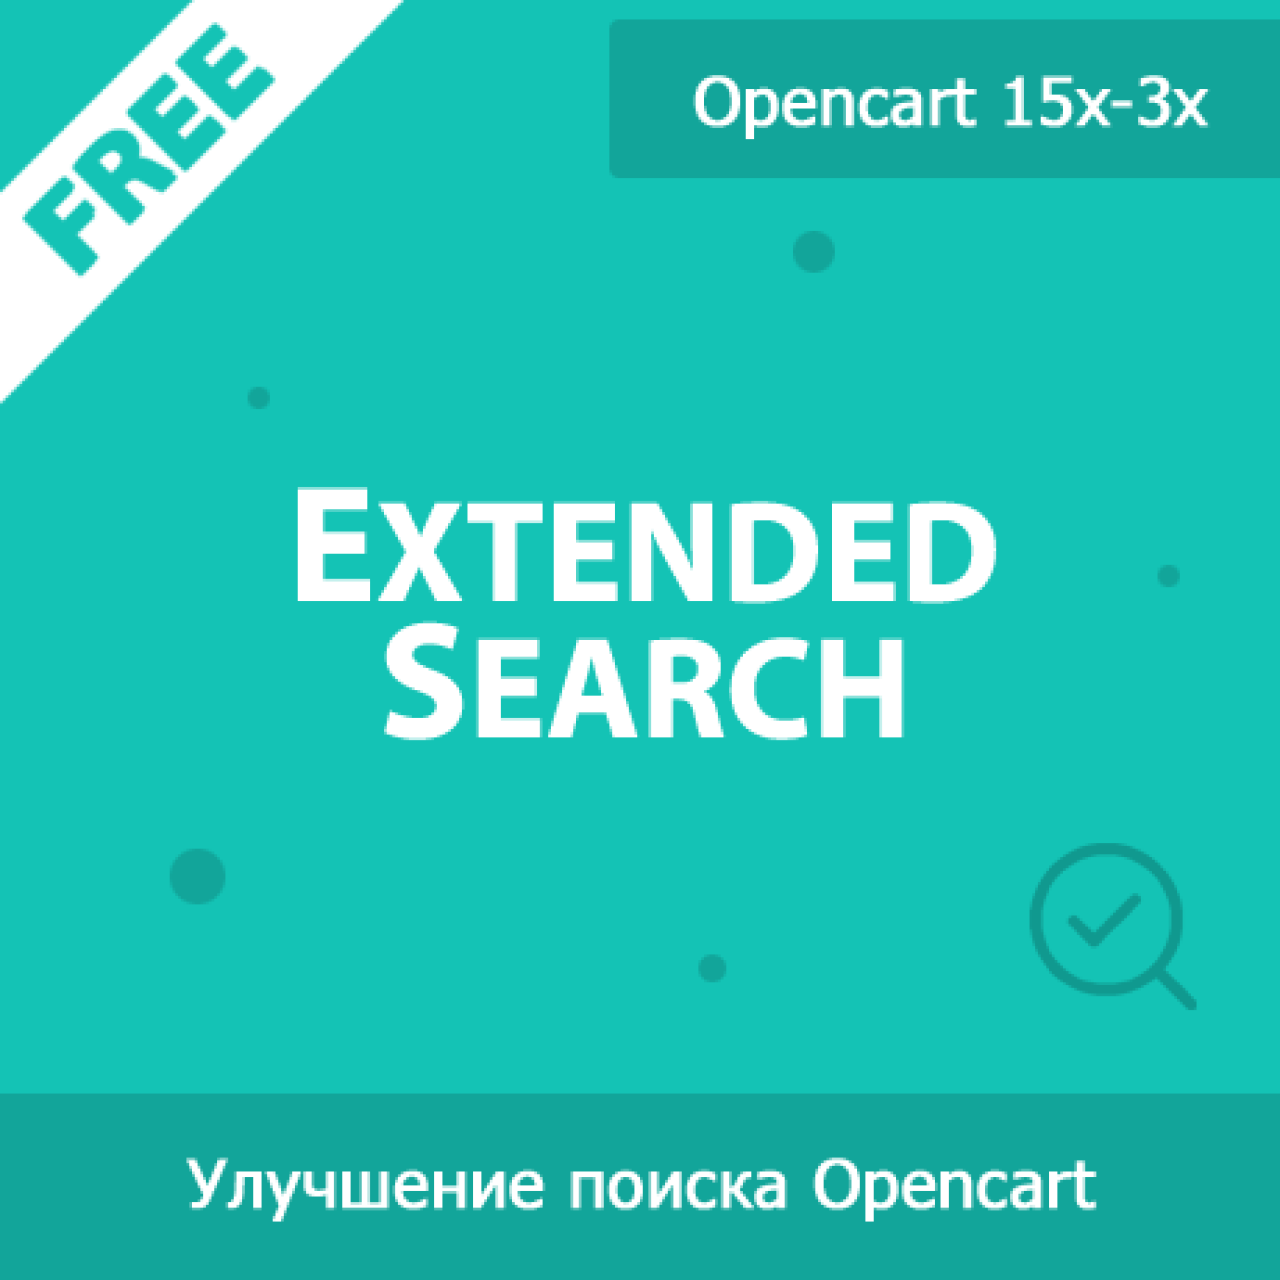 ExtendedSearch - расширенный поиск в магазине из категории Поиск для CMS OpenCart (ОпенКарт)